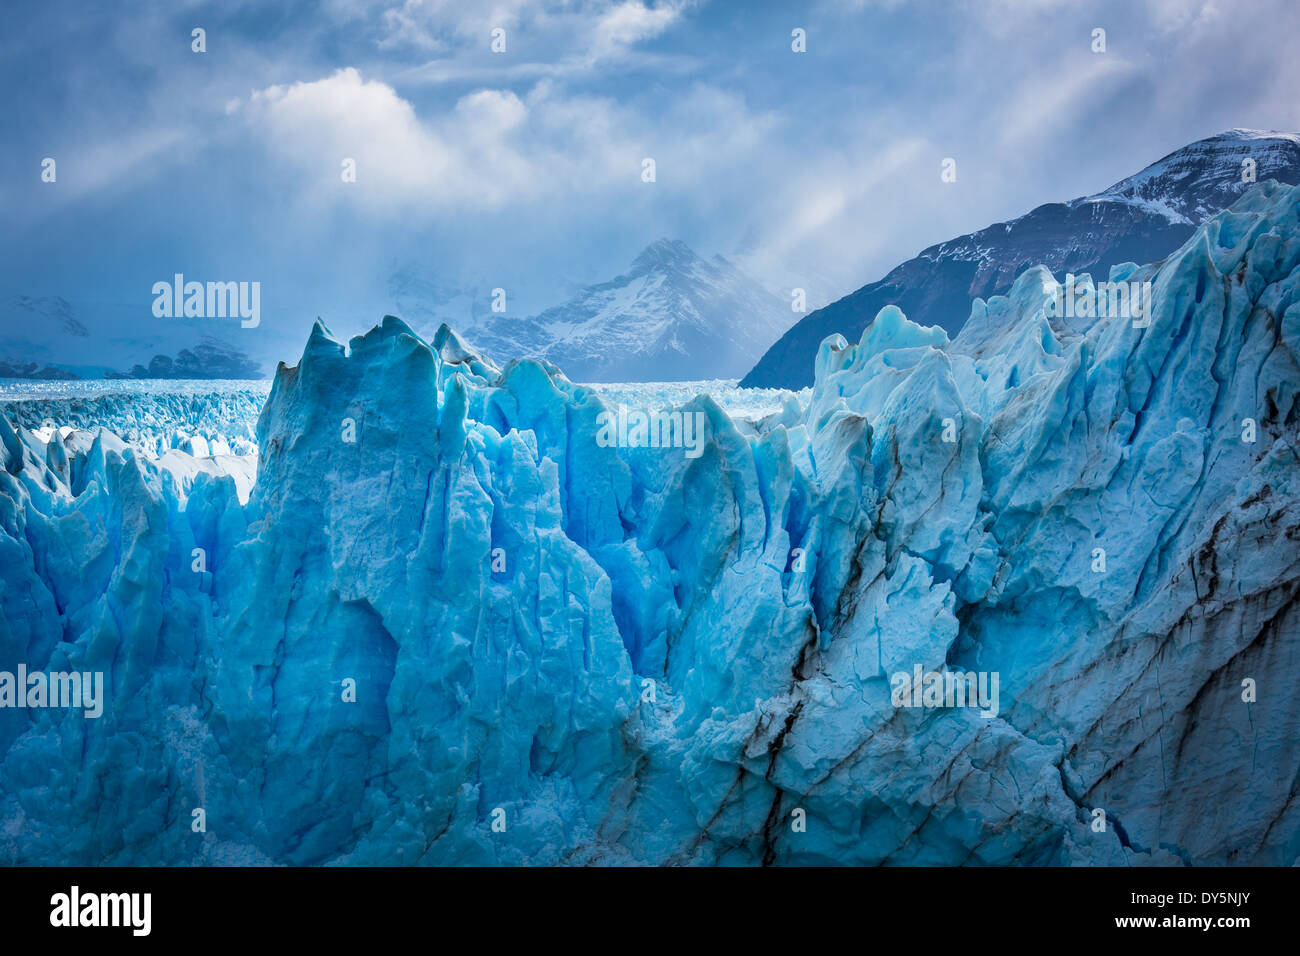 El Glaciar Perito Moreno es un glaciar ubicado en el Parque Nacional Los Glaciares, en el sudoeste de la provincia de Santa Cruz, Argentina. Foto de stock